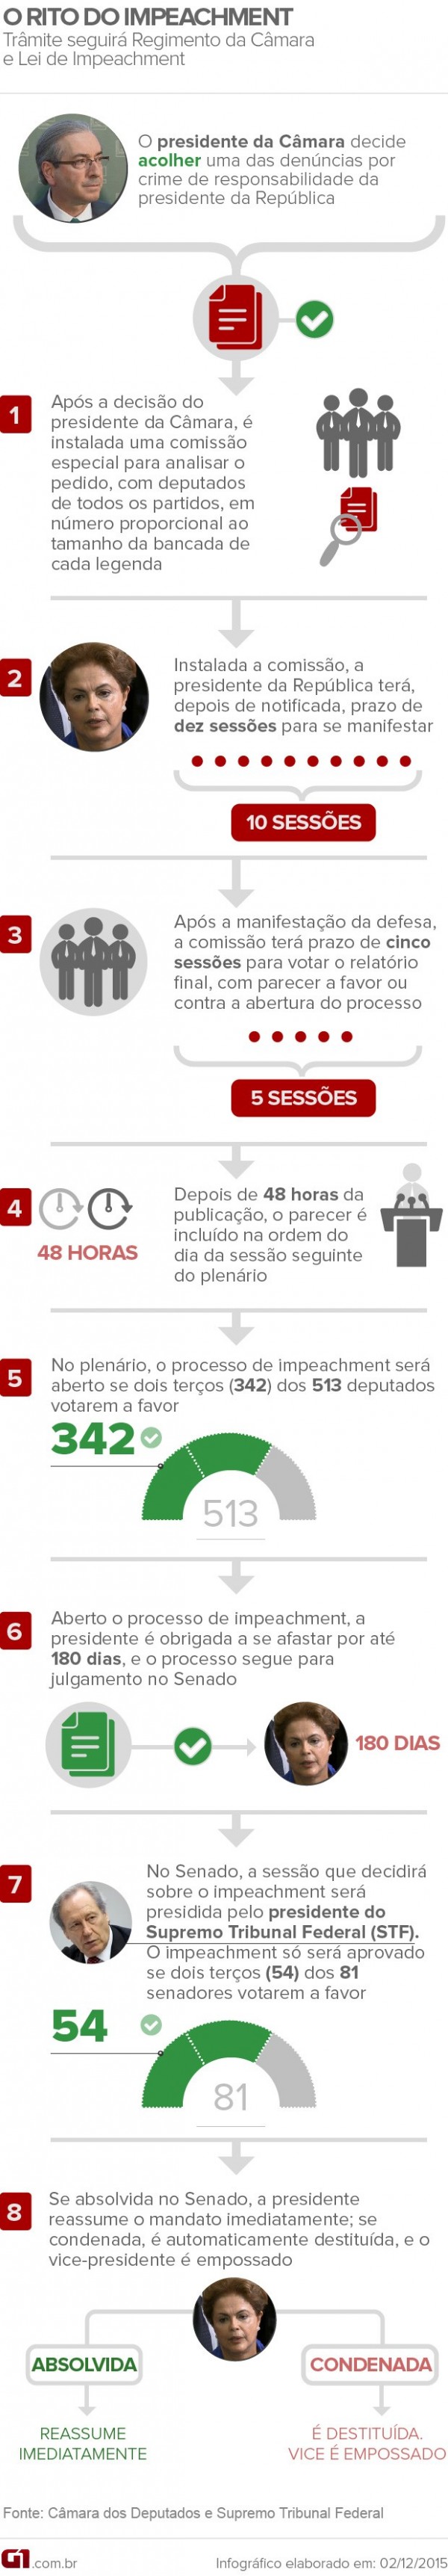 infografico rito impeachment